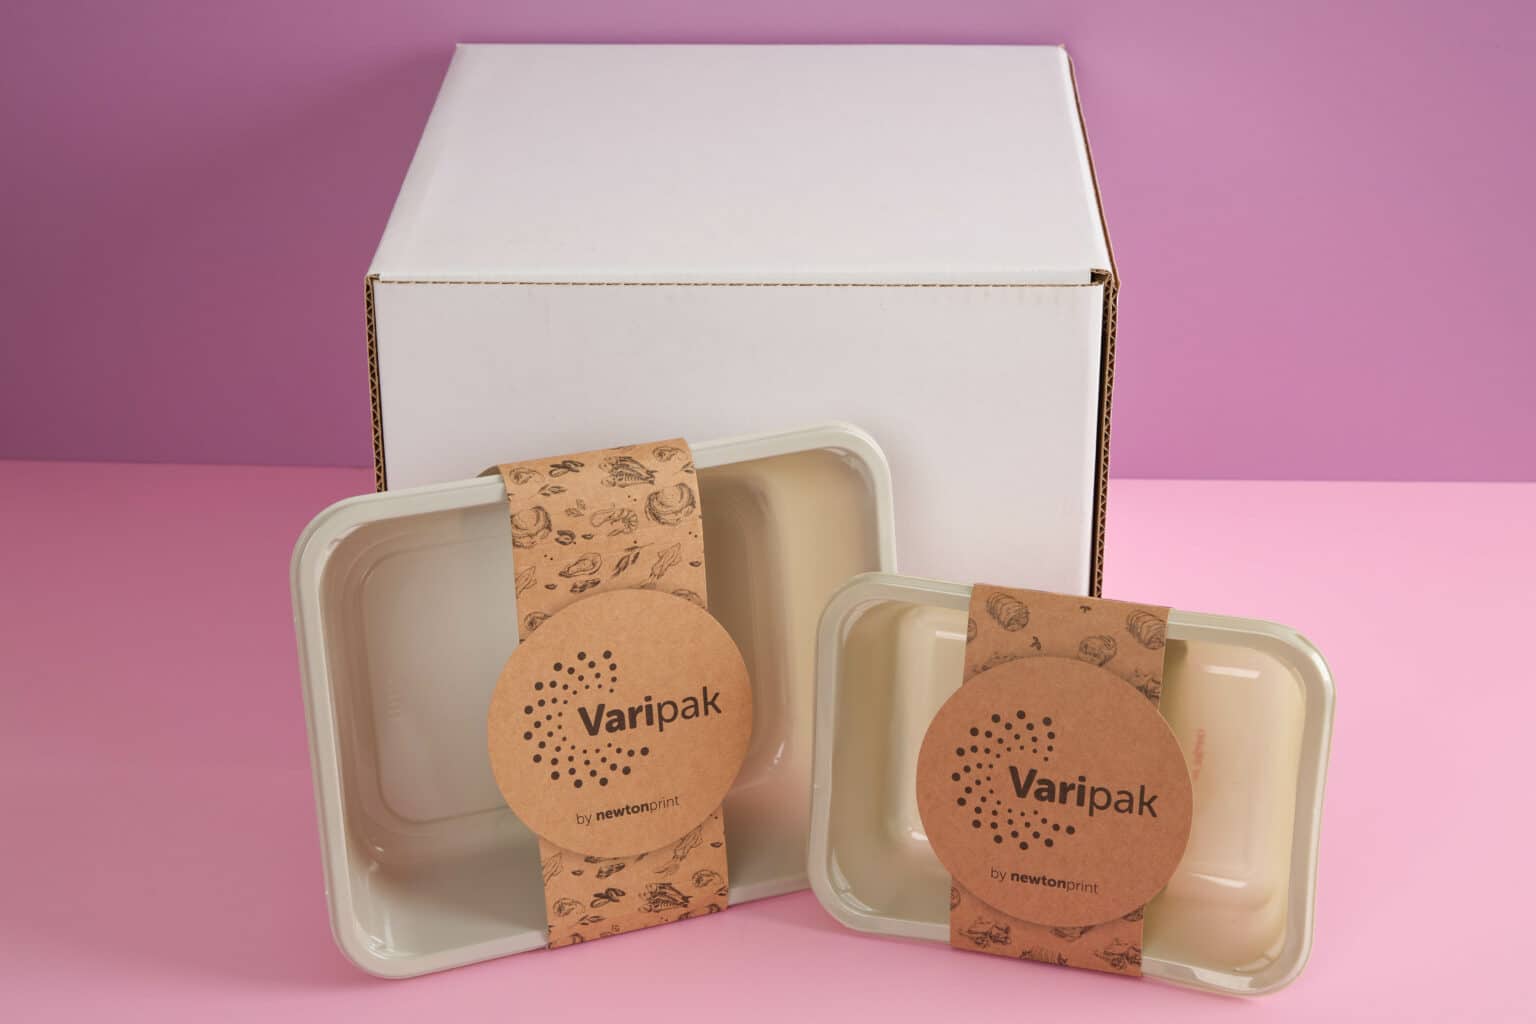 Varipak Cardboard Sleeve Packaging and Belly Band Packaging